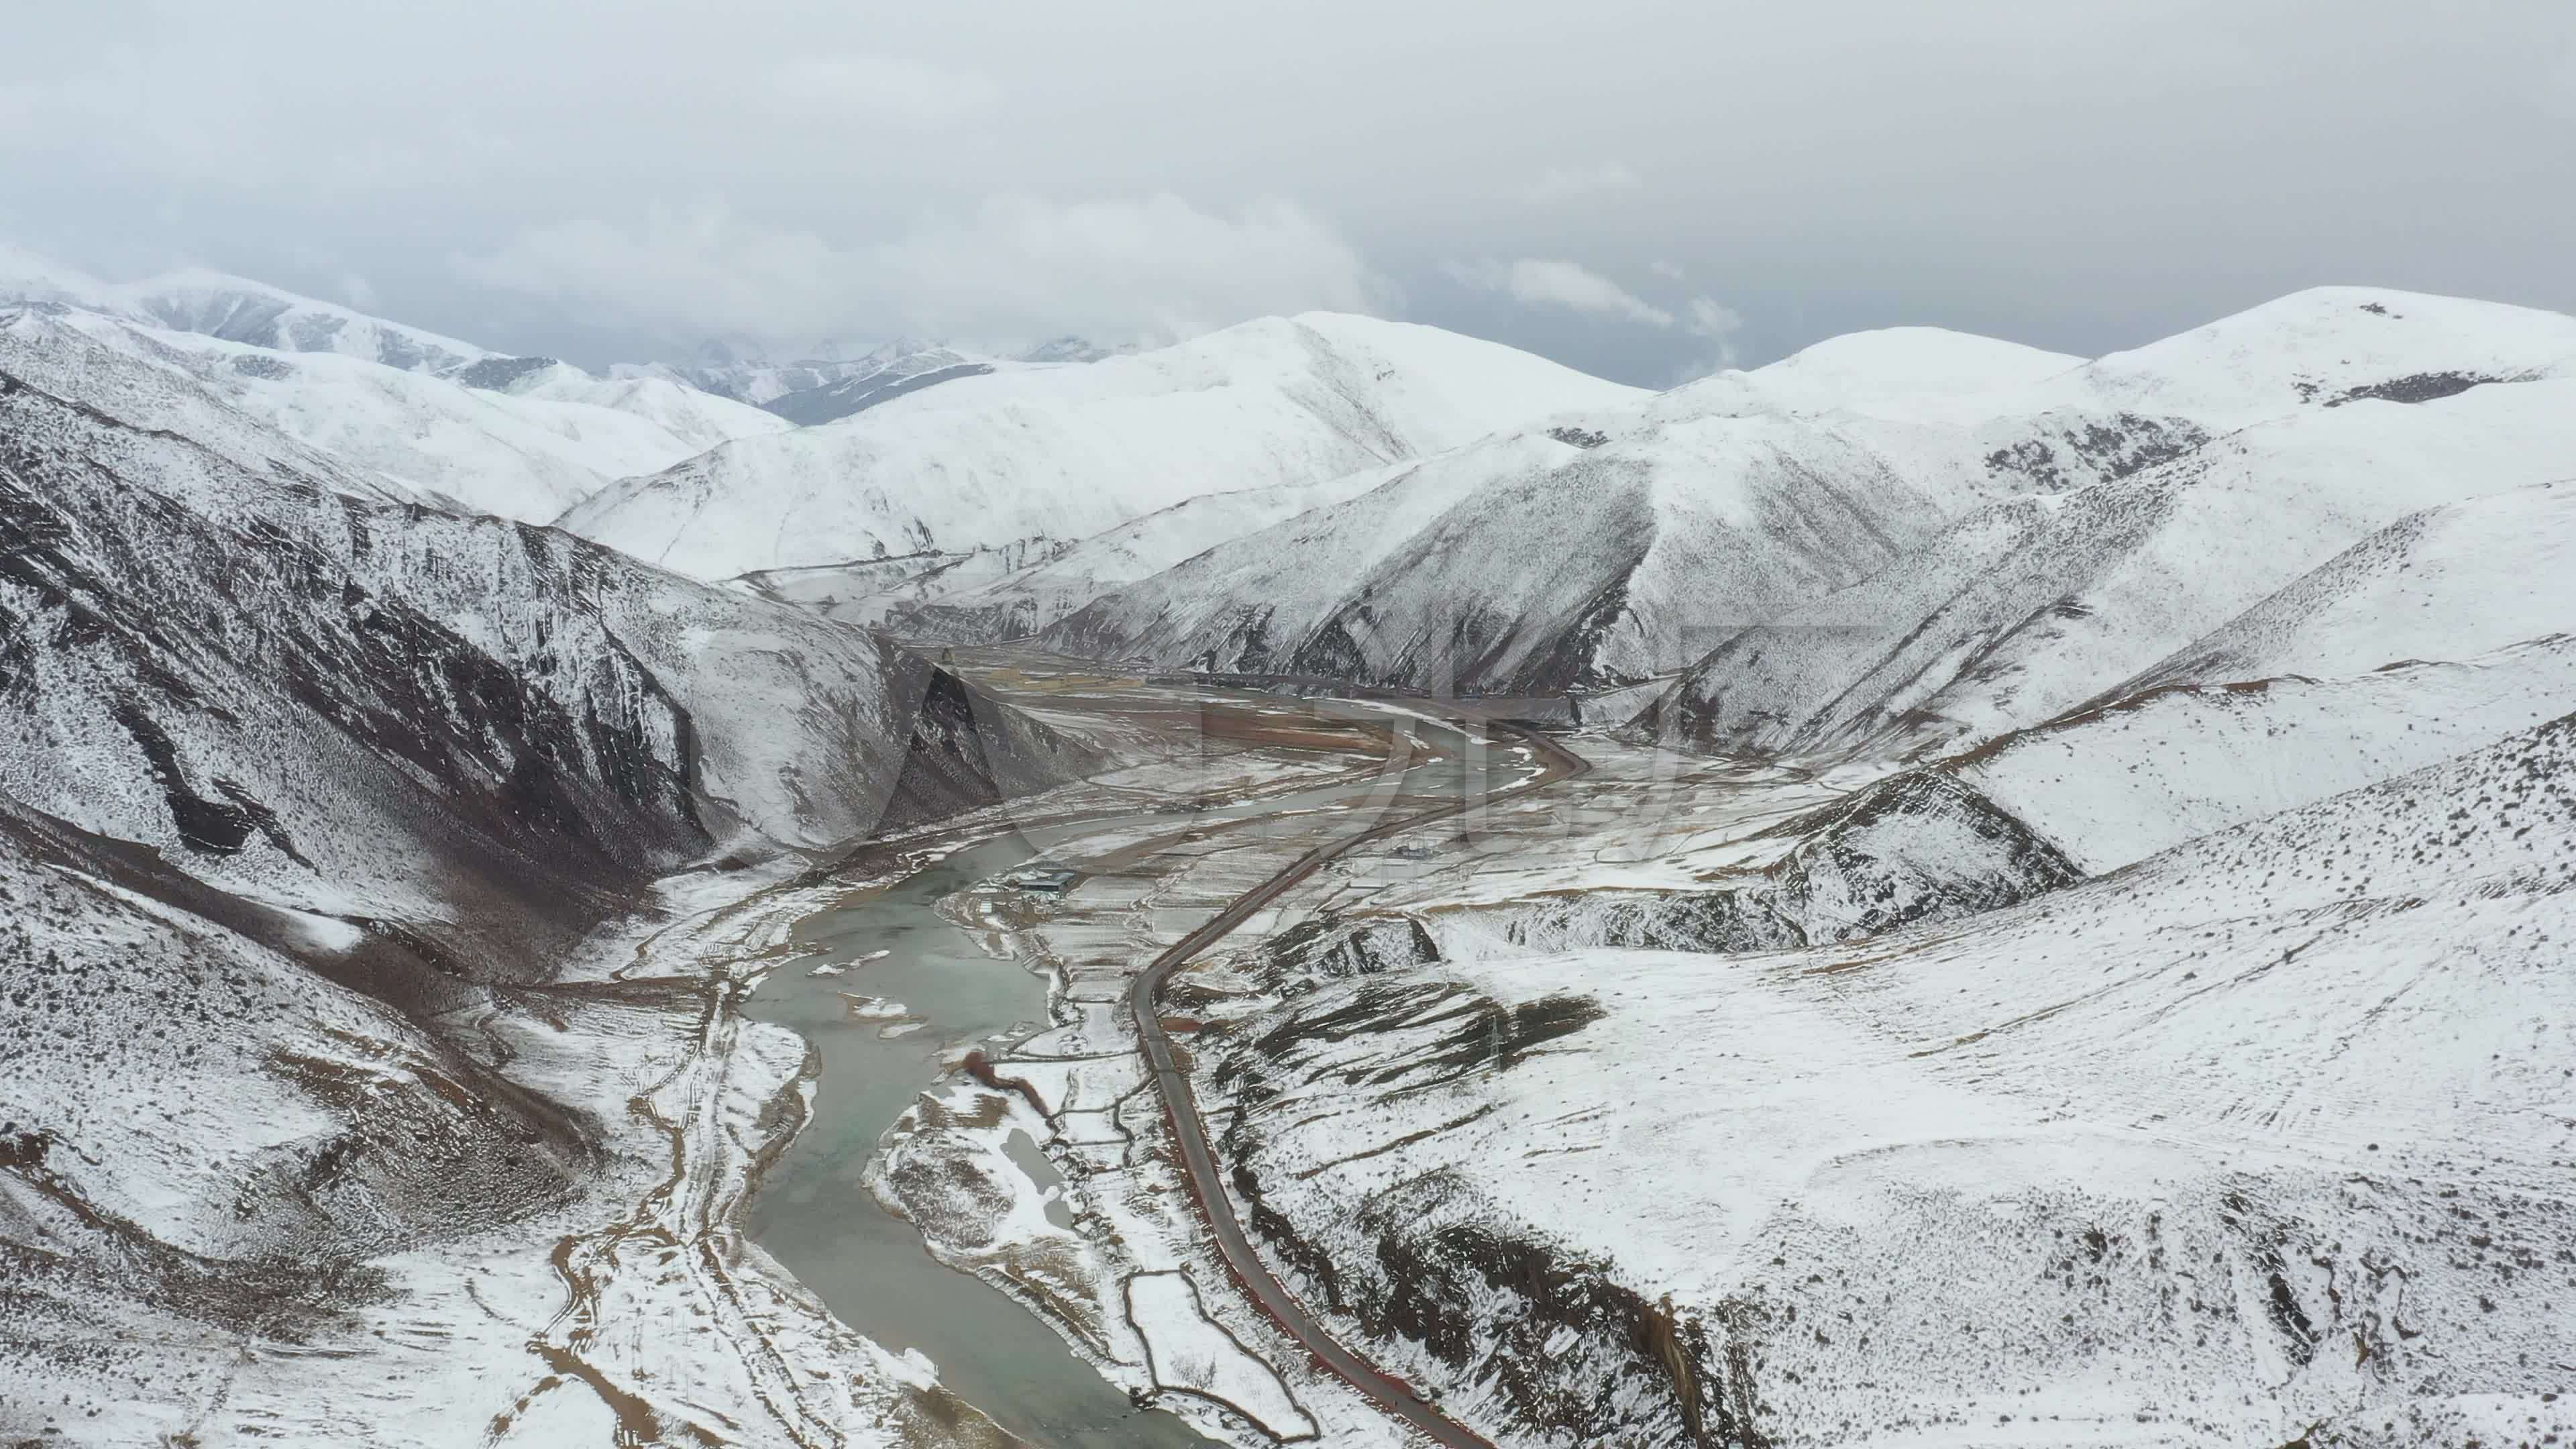 川藏线上不可错过的独特美景——巴塘-走遍四川-麻辣社区